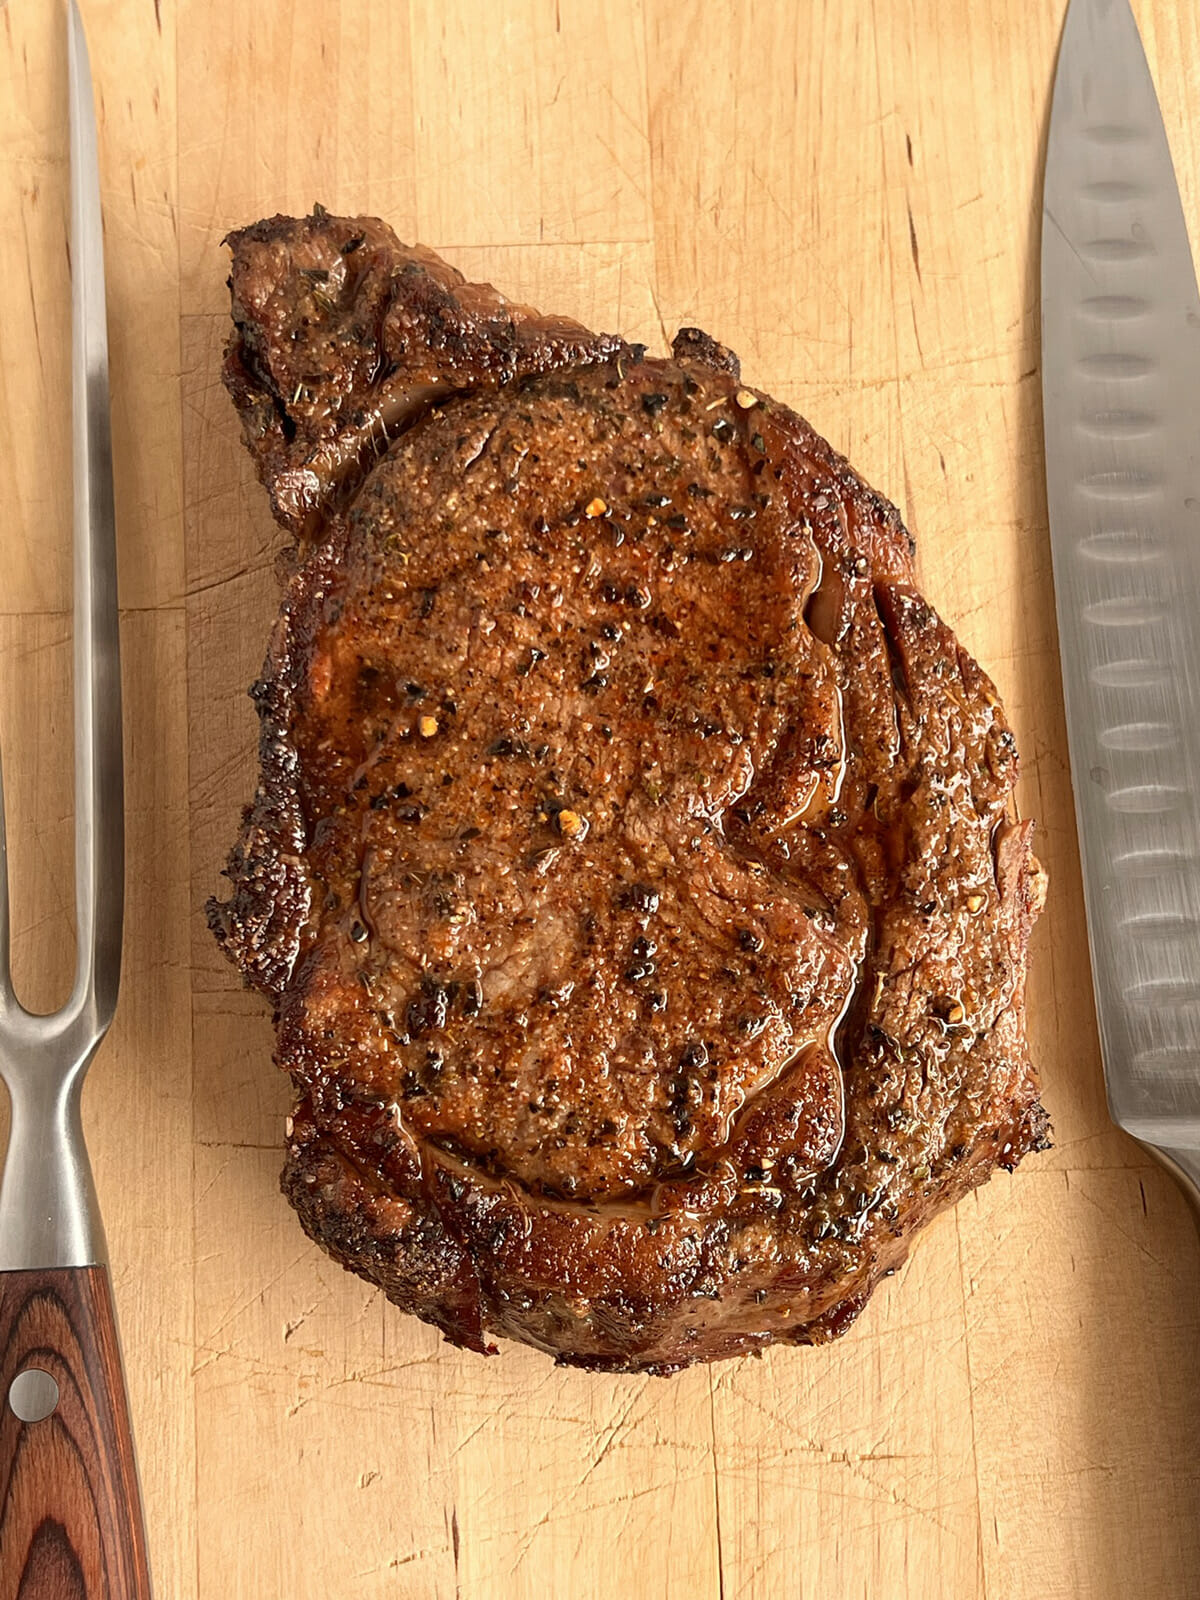 Air fryer ribeye steak resting on a cutting board.